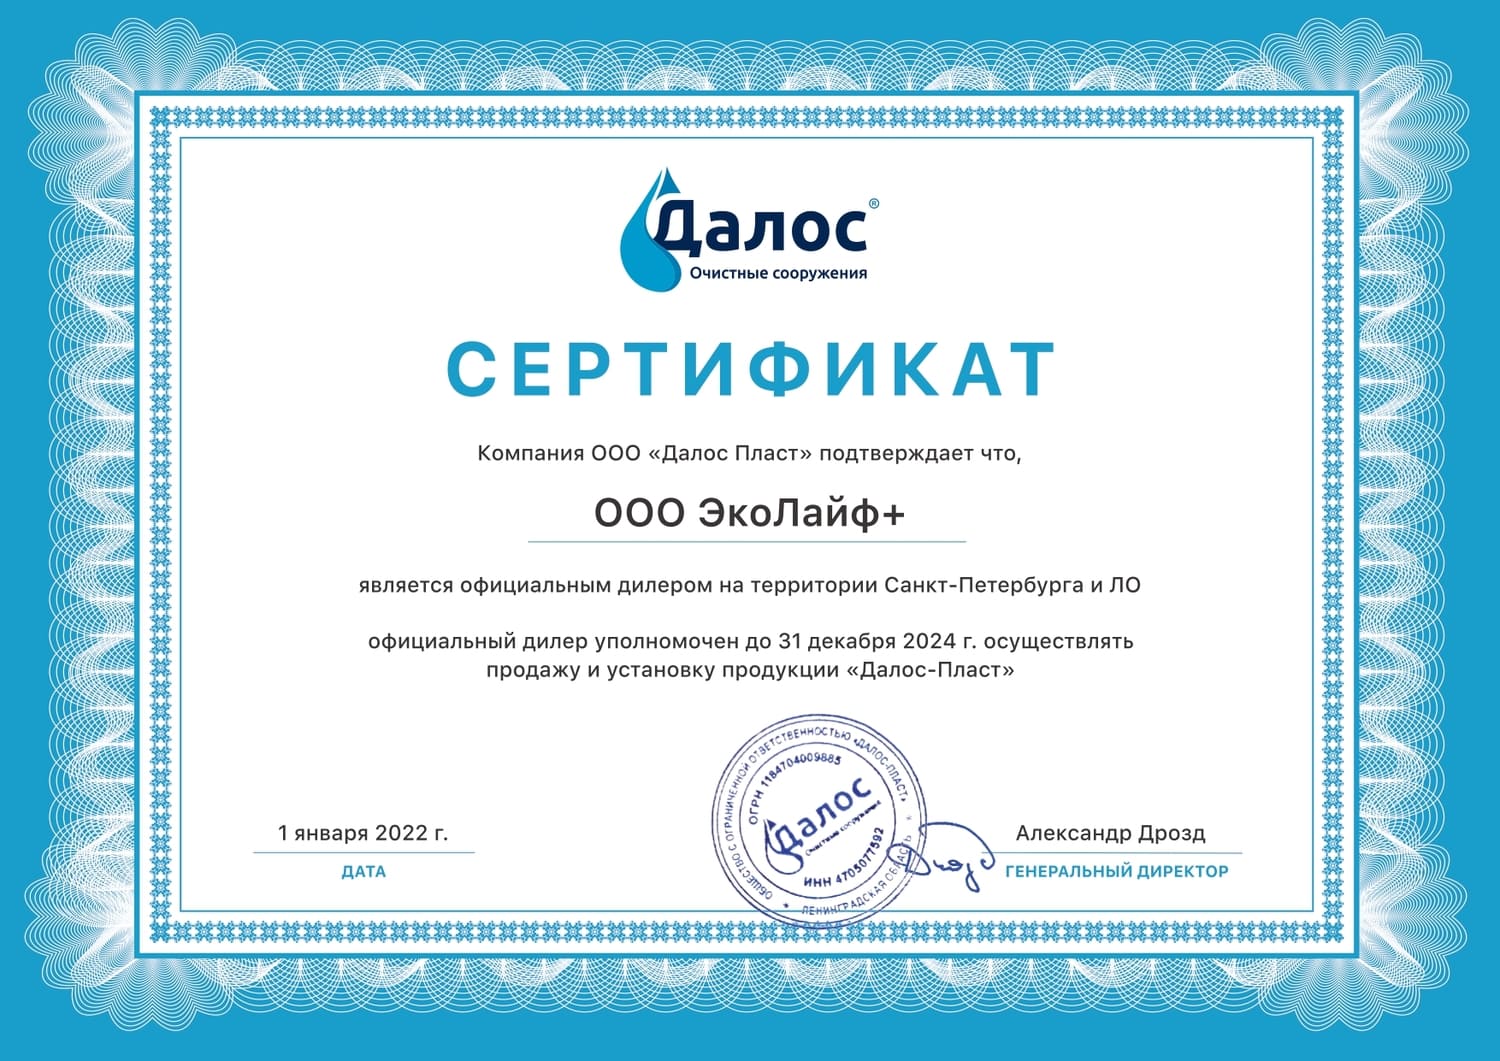 Сертификат Далос Пласт до 2024 года